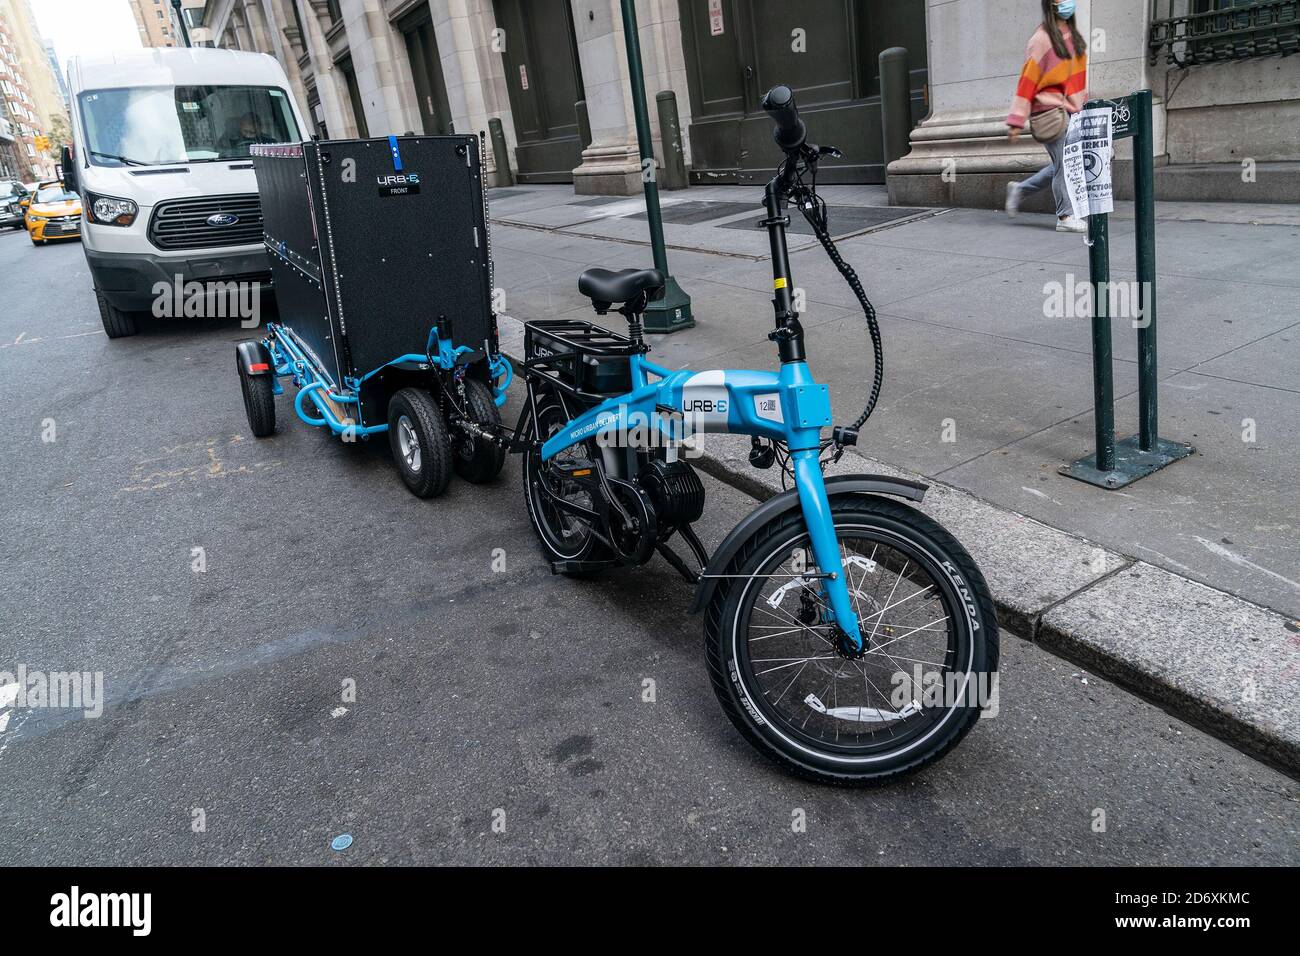 Ansicht des Urb-E Fahrrads und Anhängers, die von Amazon-Mitarbeitern für  die Lieferung in New York verwendet werden. Um die Lieferung effizienter zu  gestalten und die Treibhausgasemissionen von Autos zu reduzieren, wird  Amazon